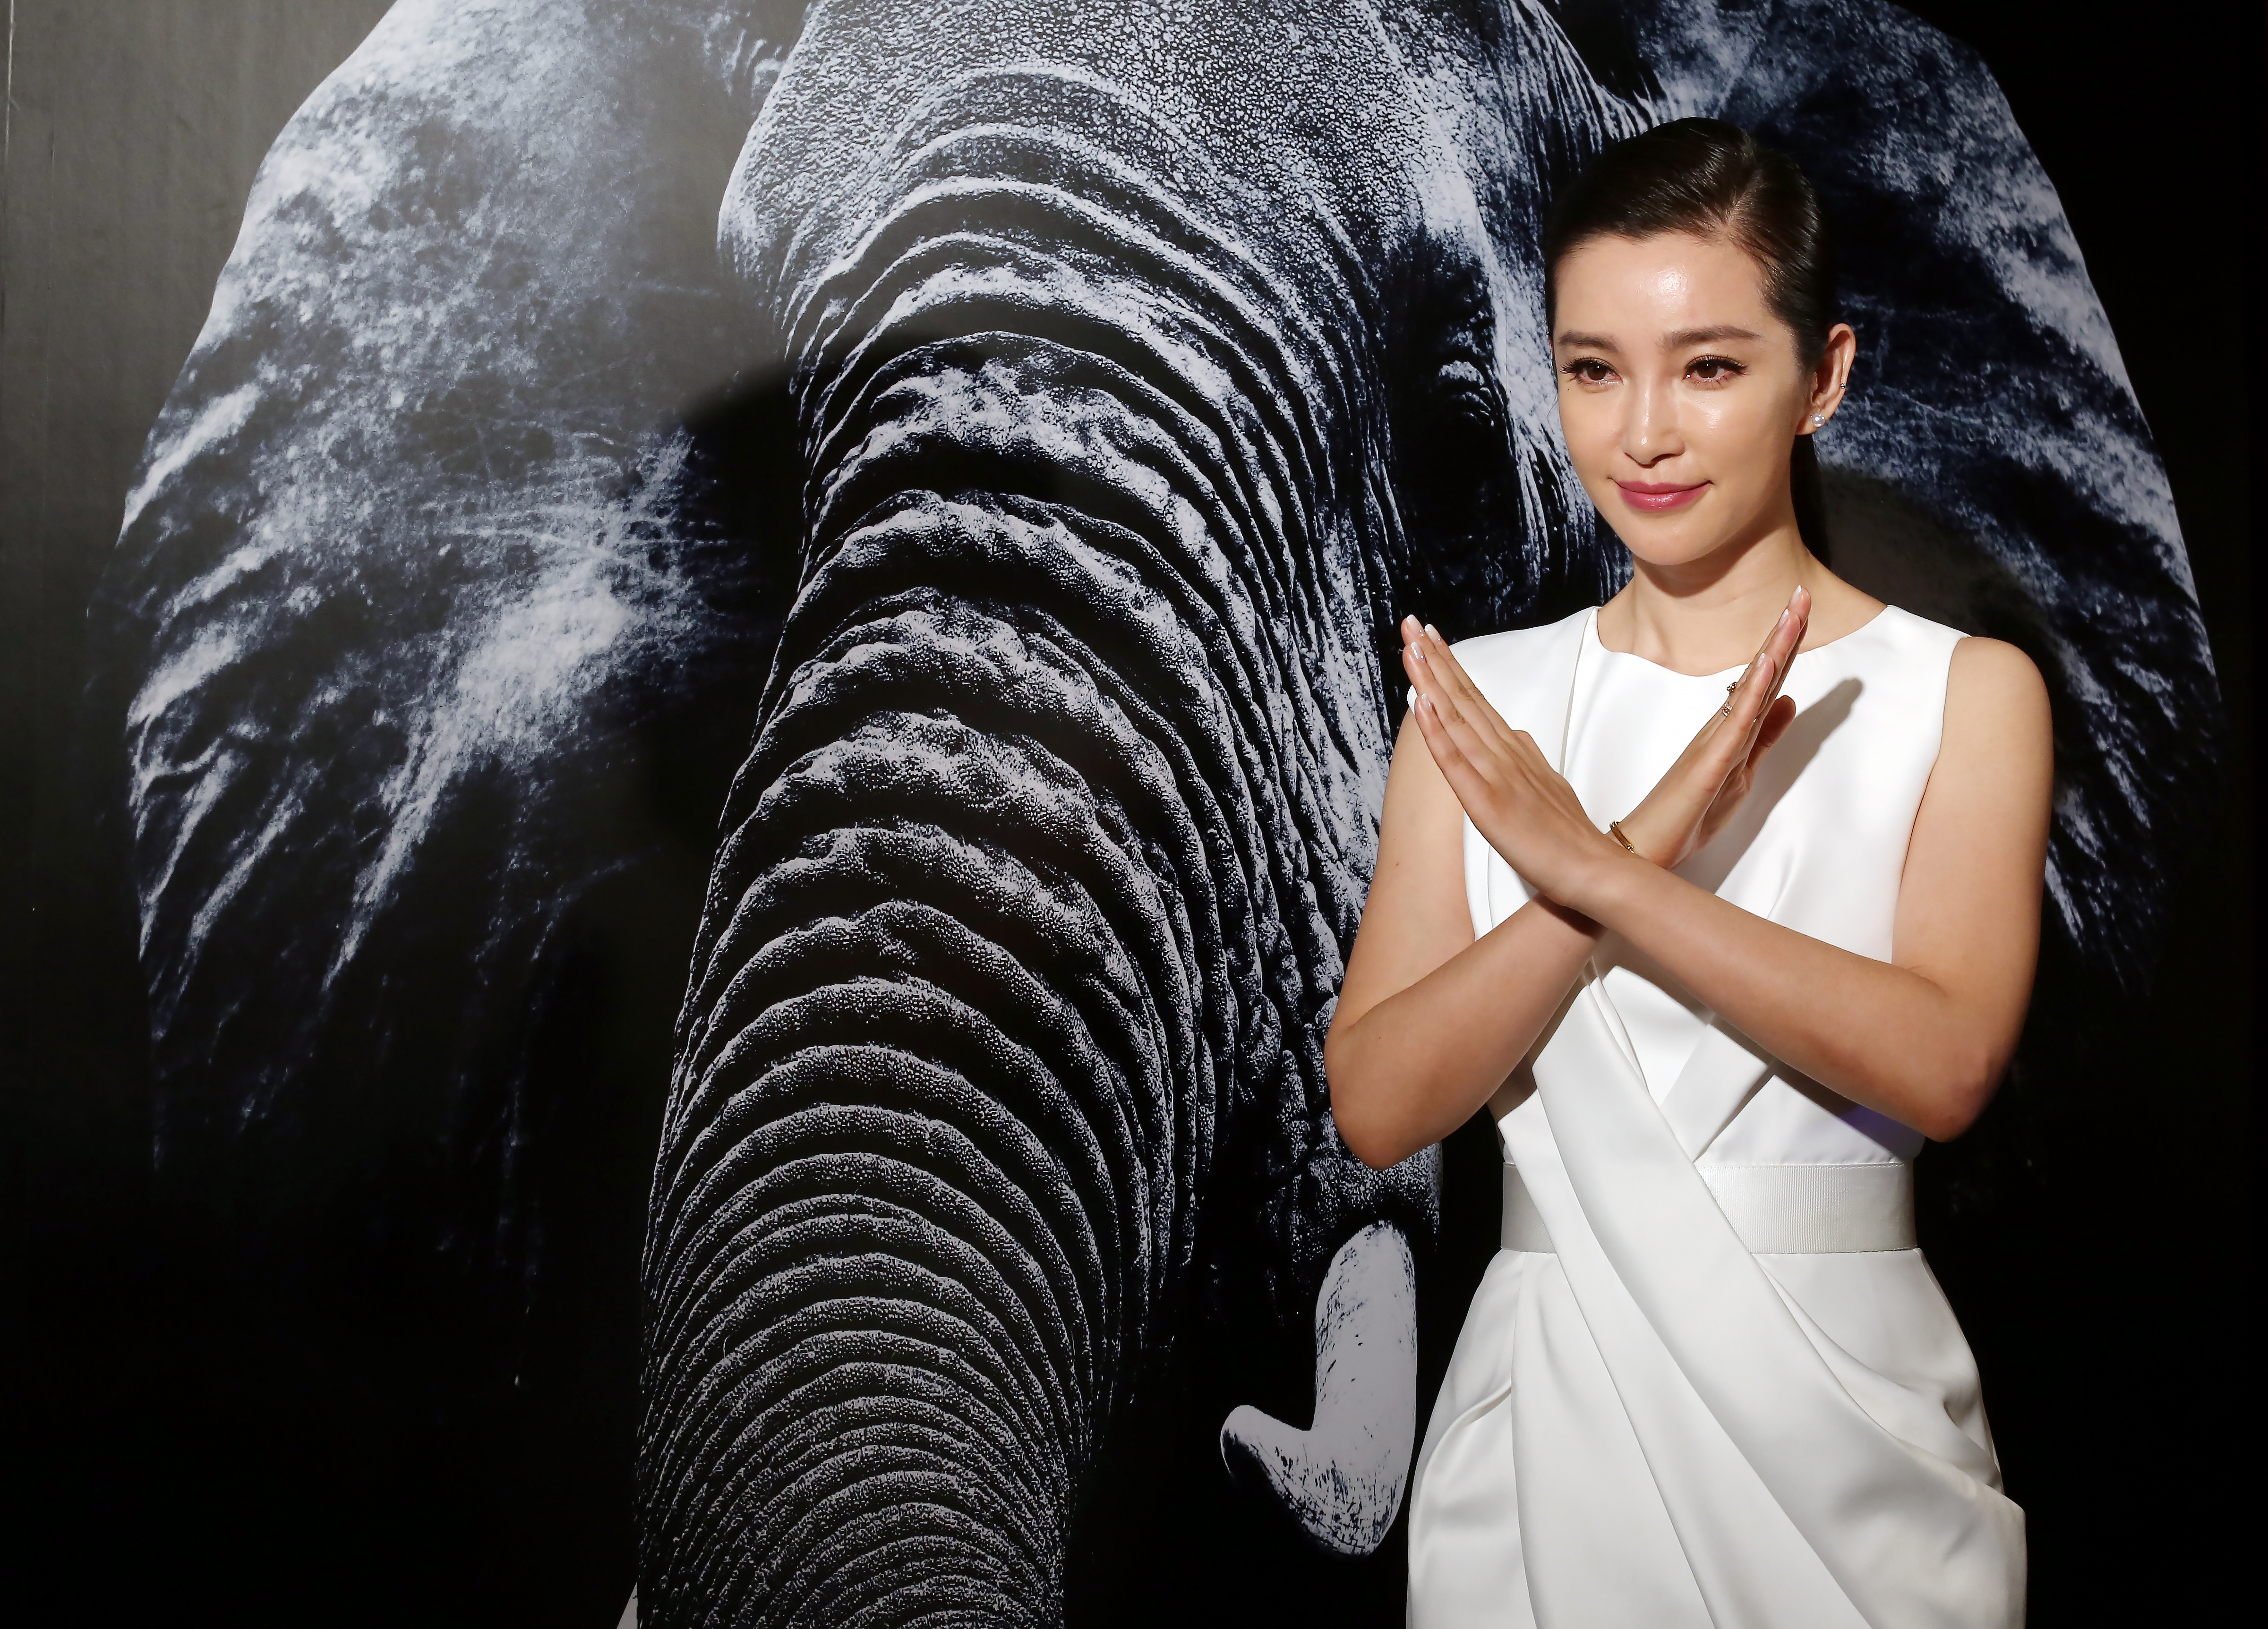 Actress Li Bingbing attends Hong Kong Ivory Trade Ban Press Conference at Island Shangri-La in Admiralty. 23OCT15